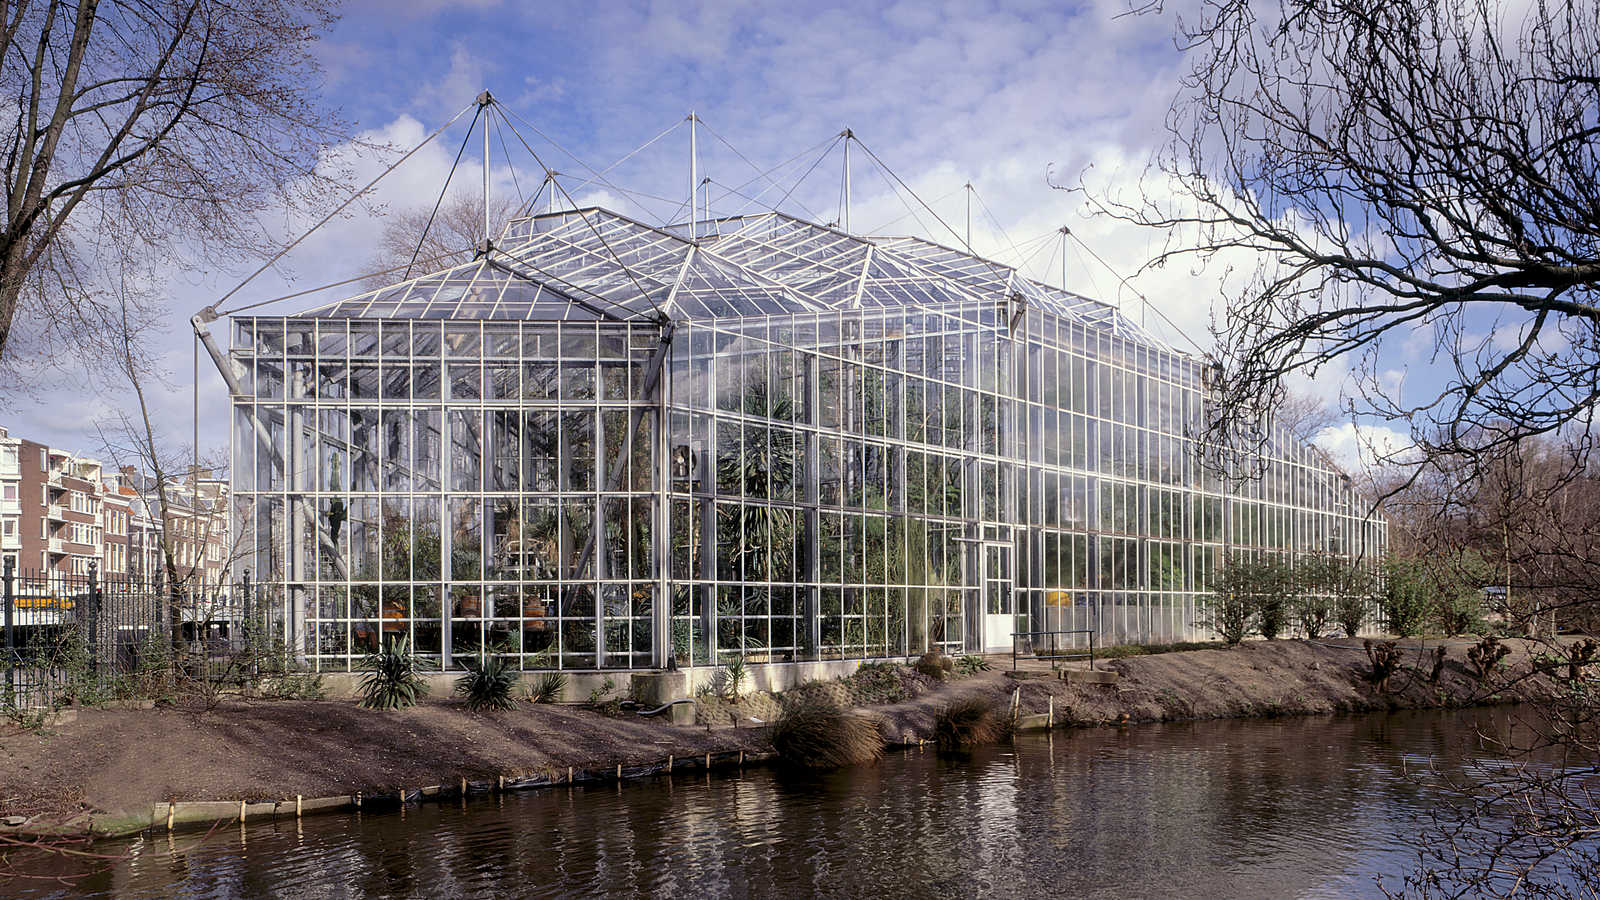 Hortus Botanicus, Amsterdam — Zwarts & Jansma Architects